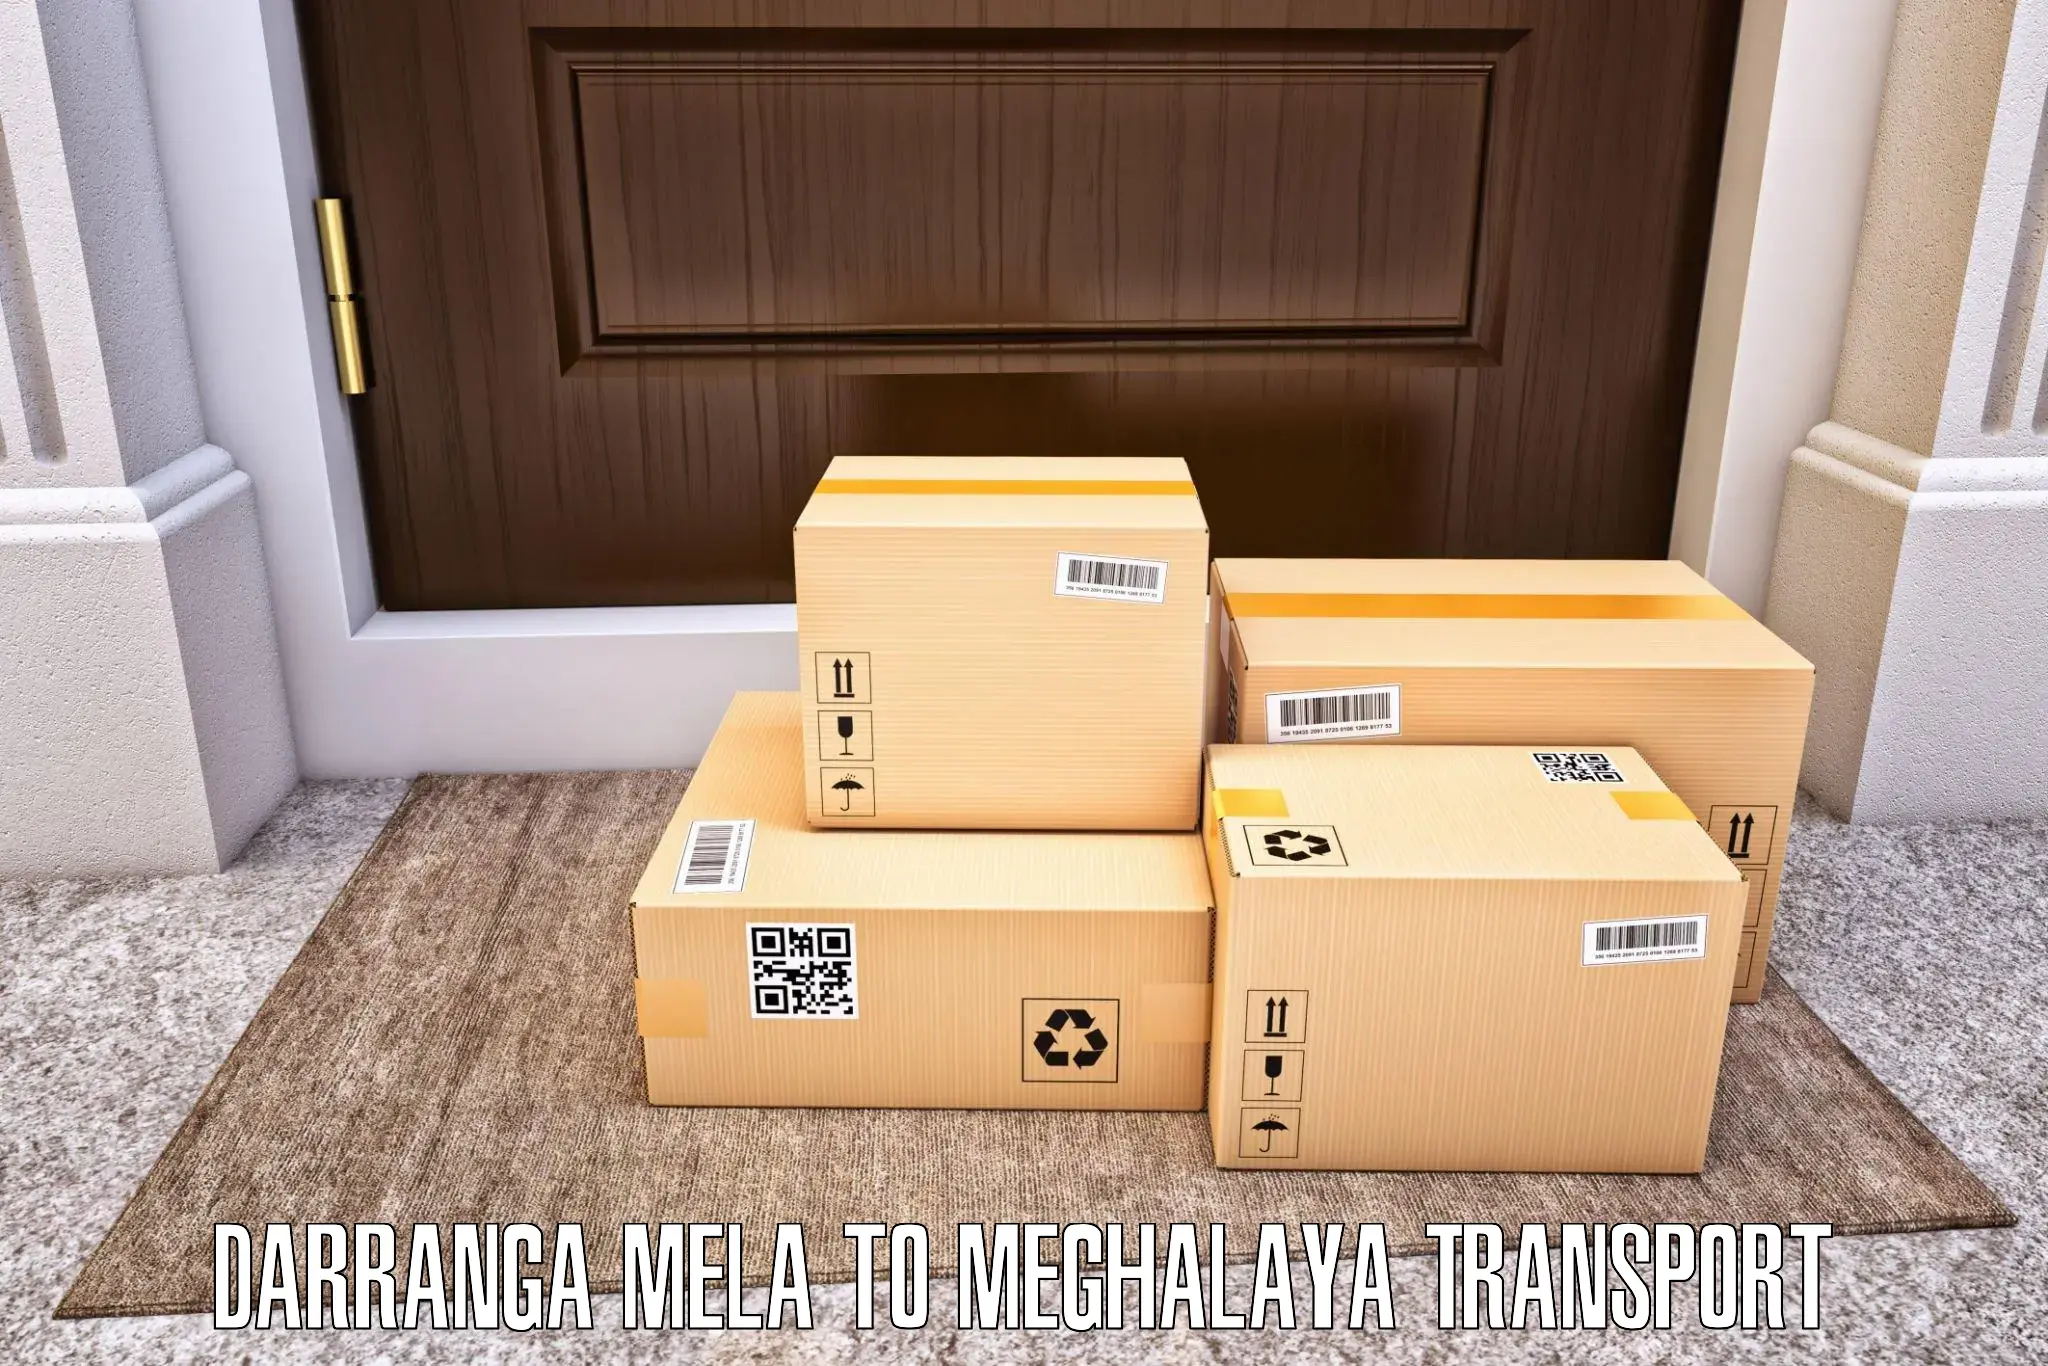 Commercial transport service Darranga Mela to Williamnagar